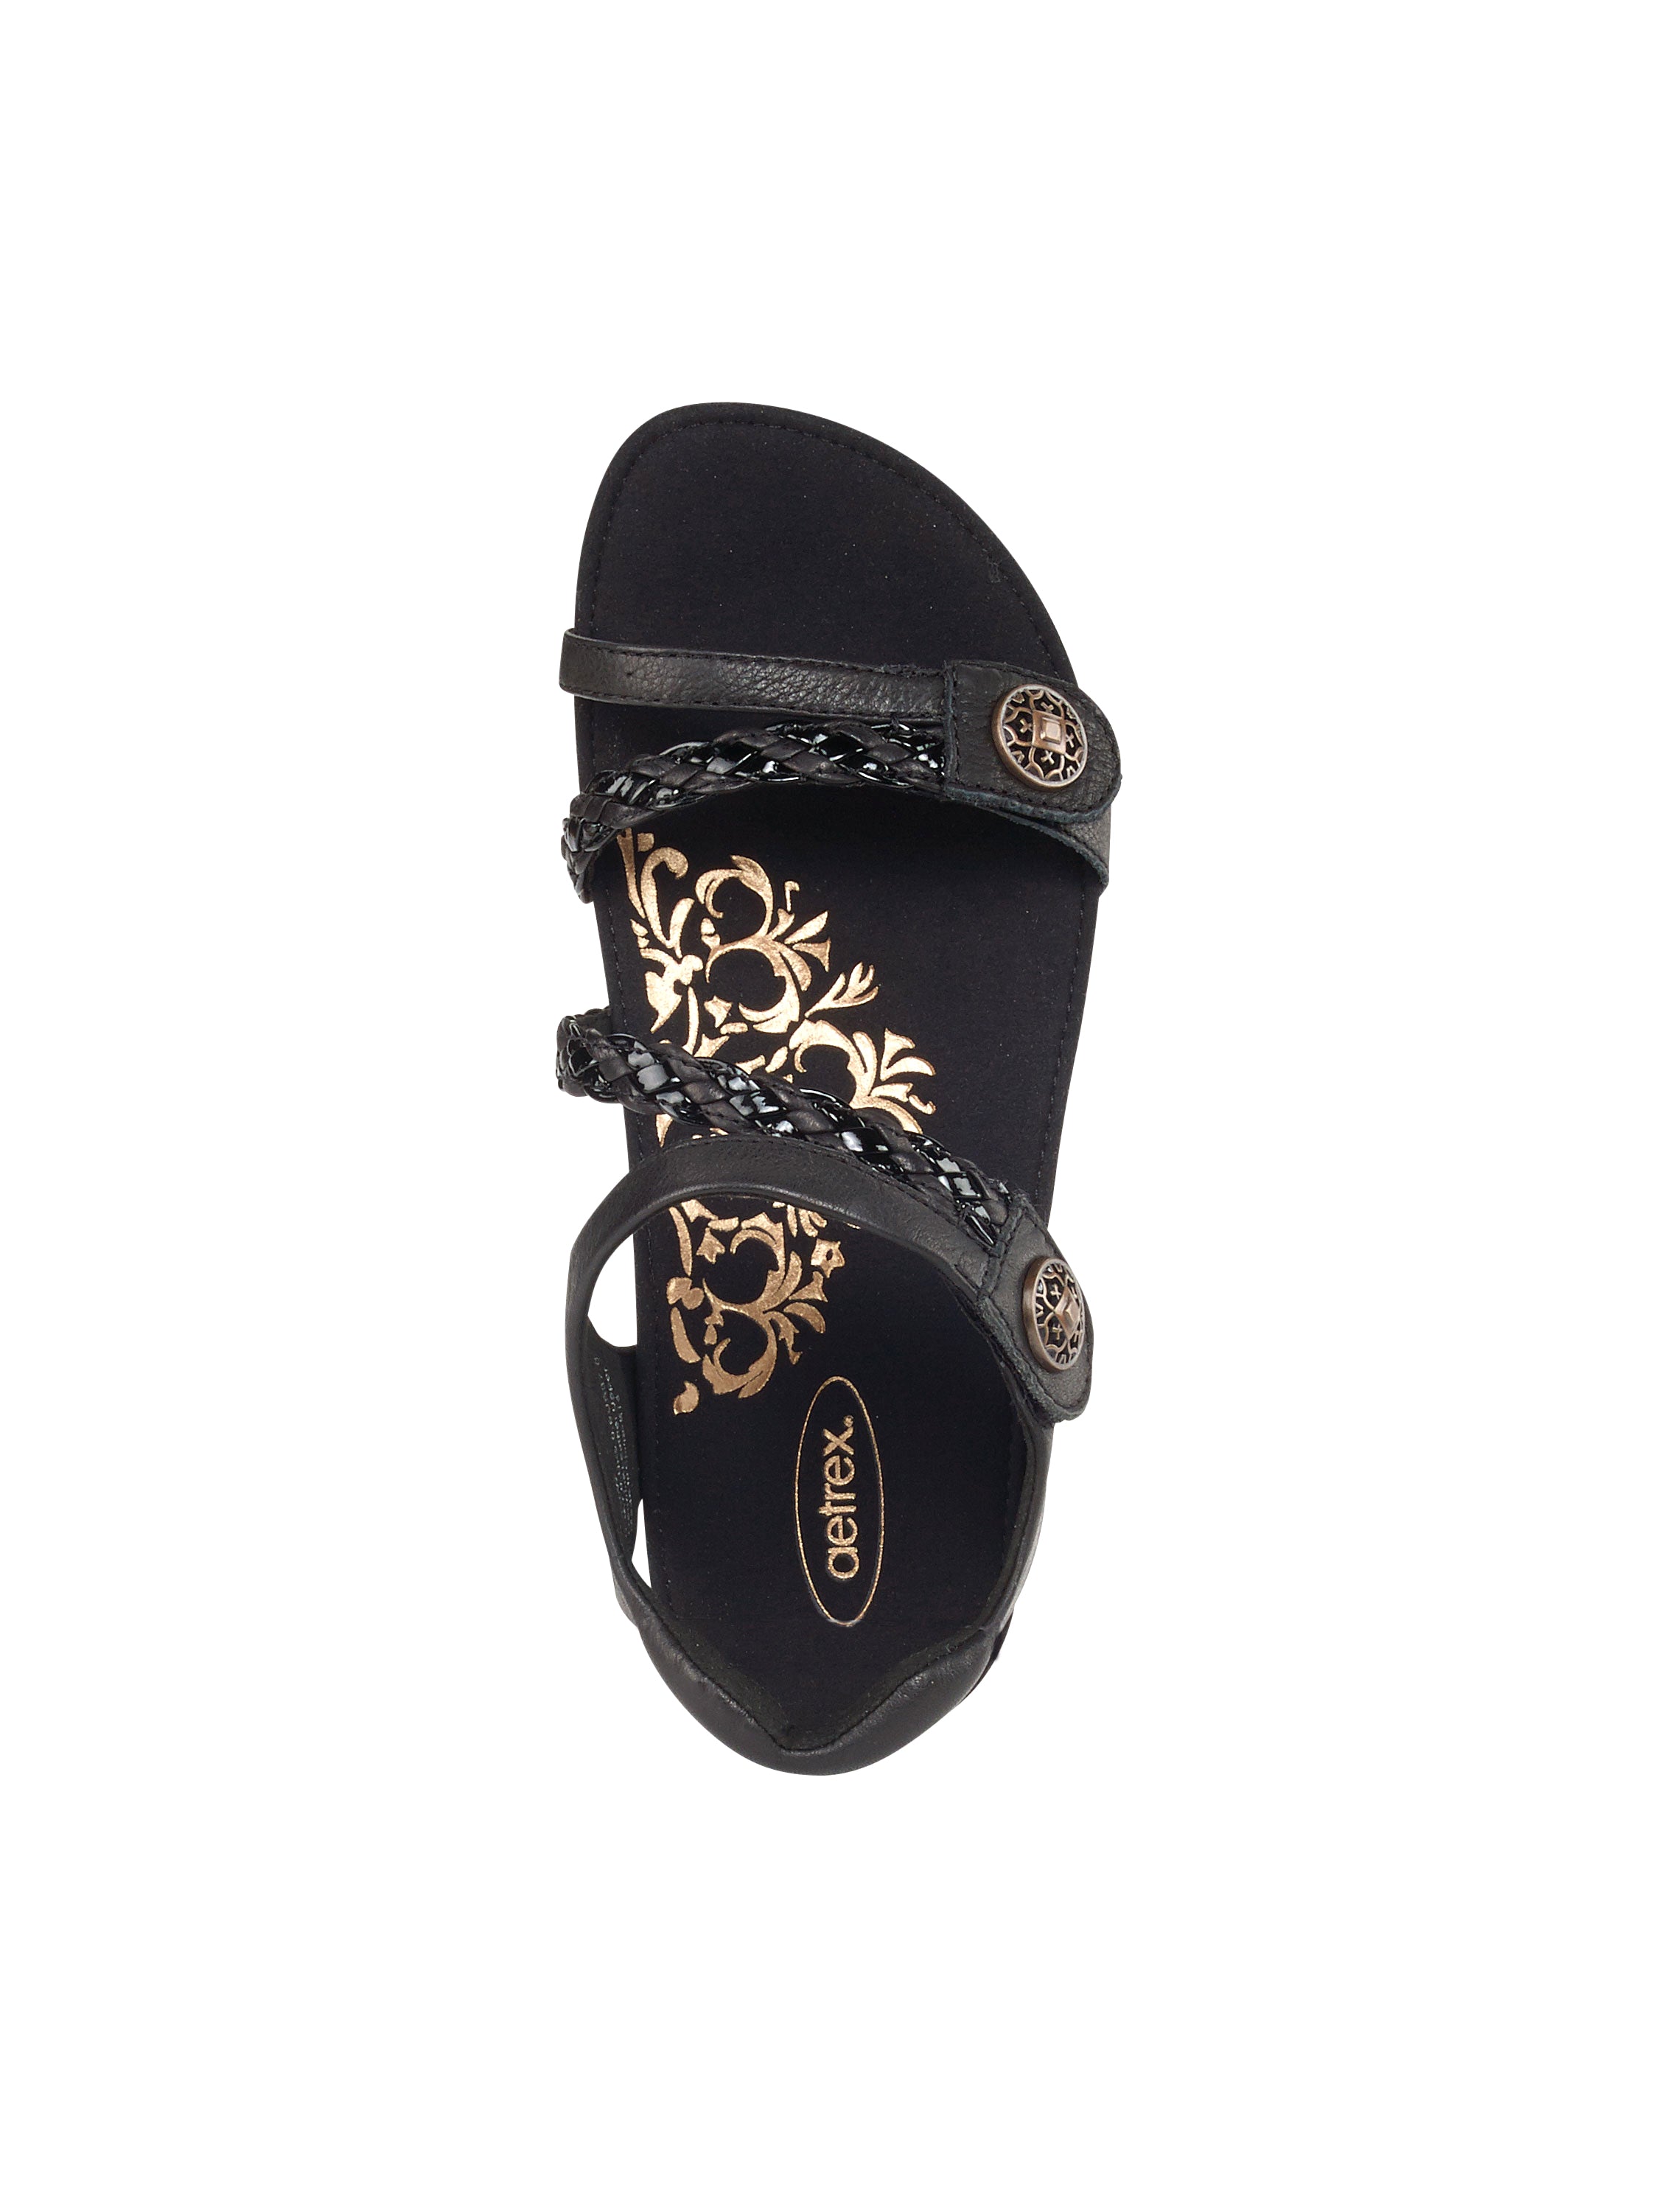 Aetrex Women's Jillian Braided Quarter Strap Sandals